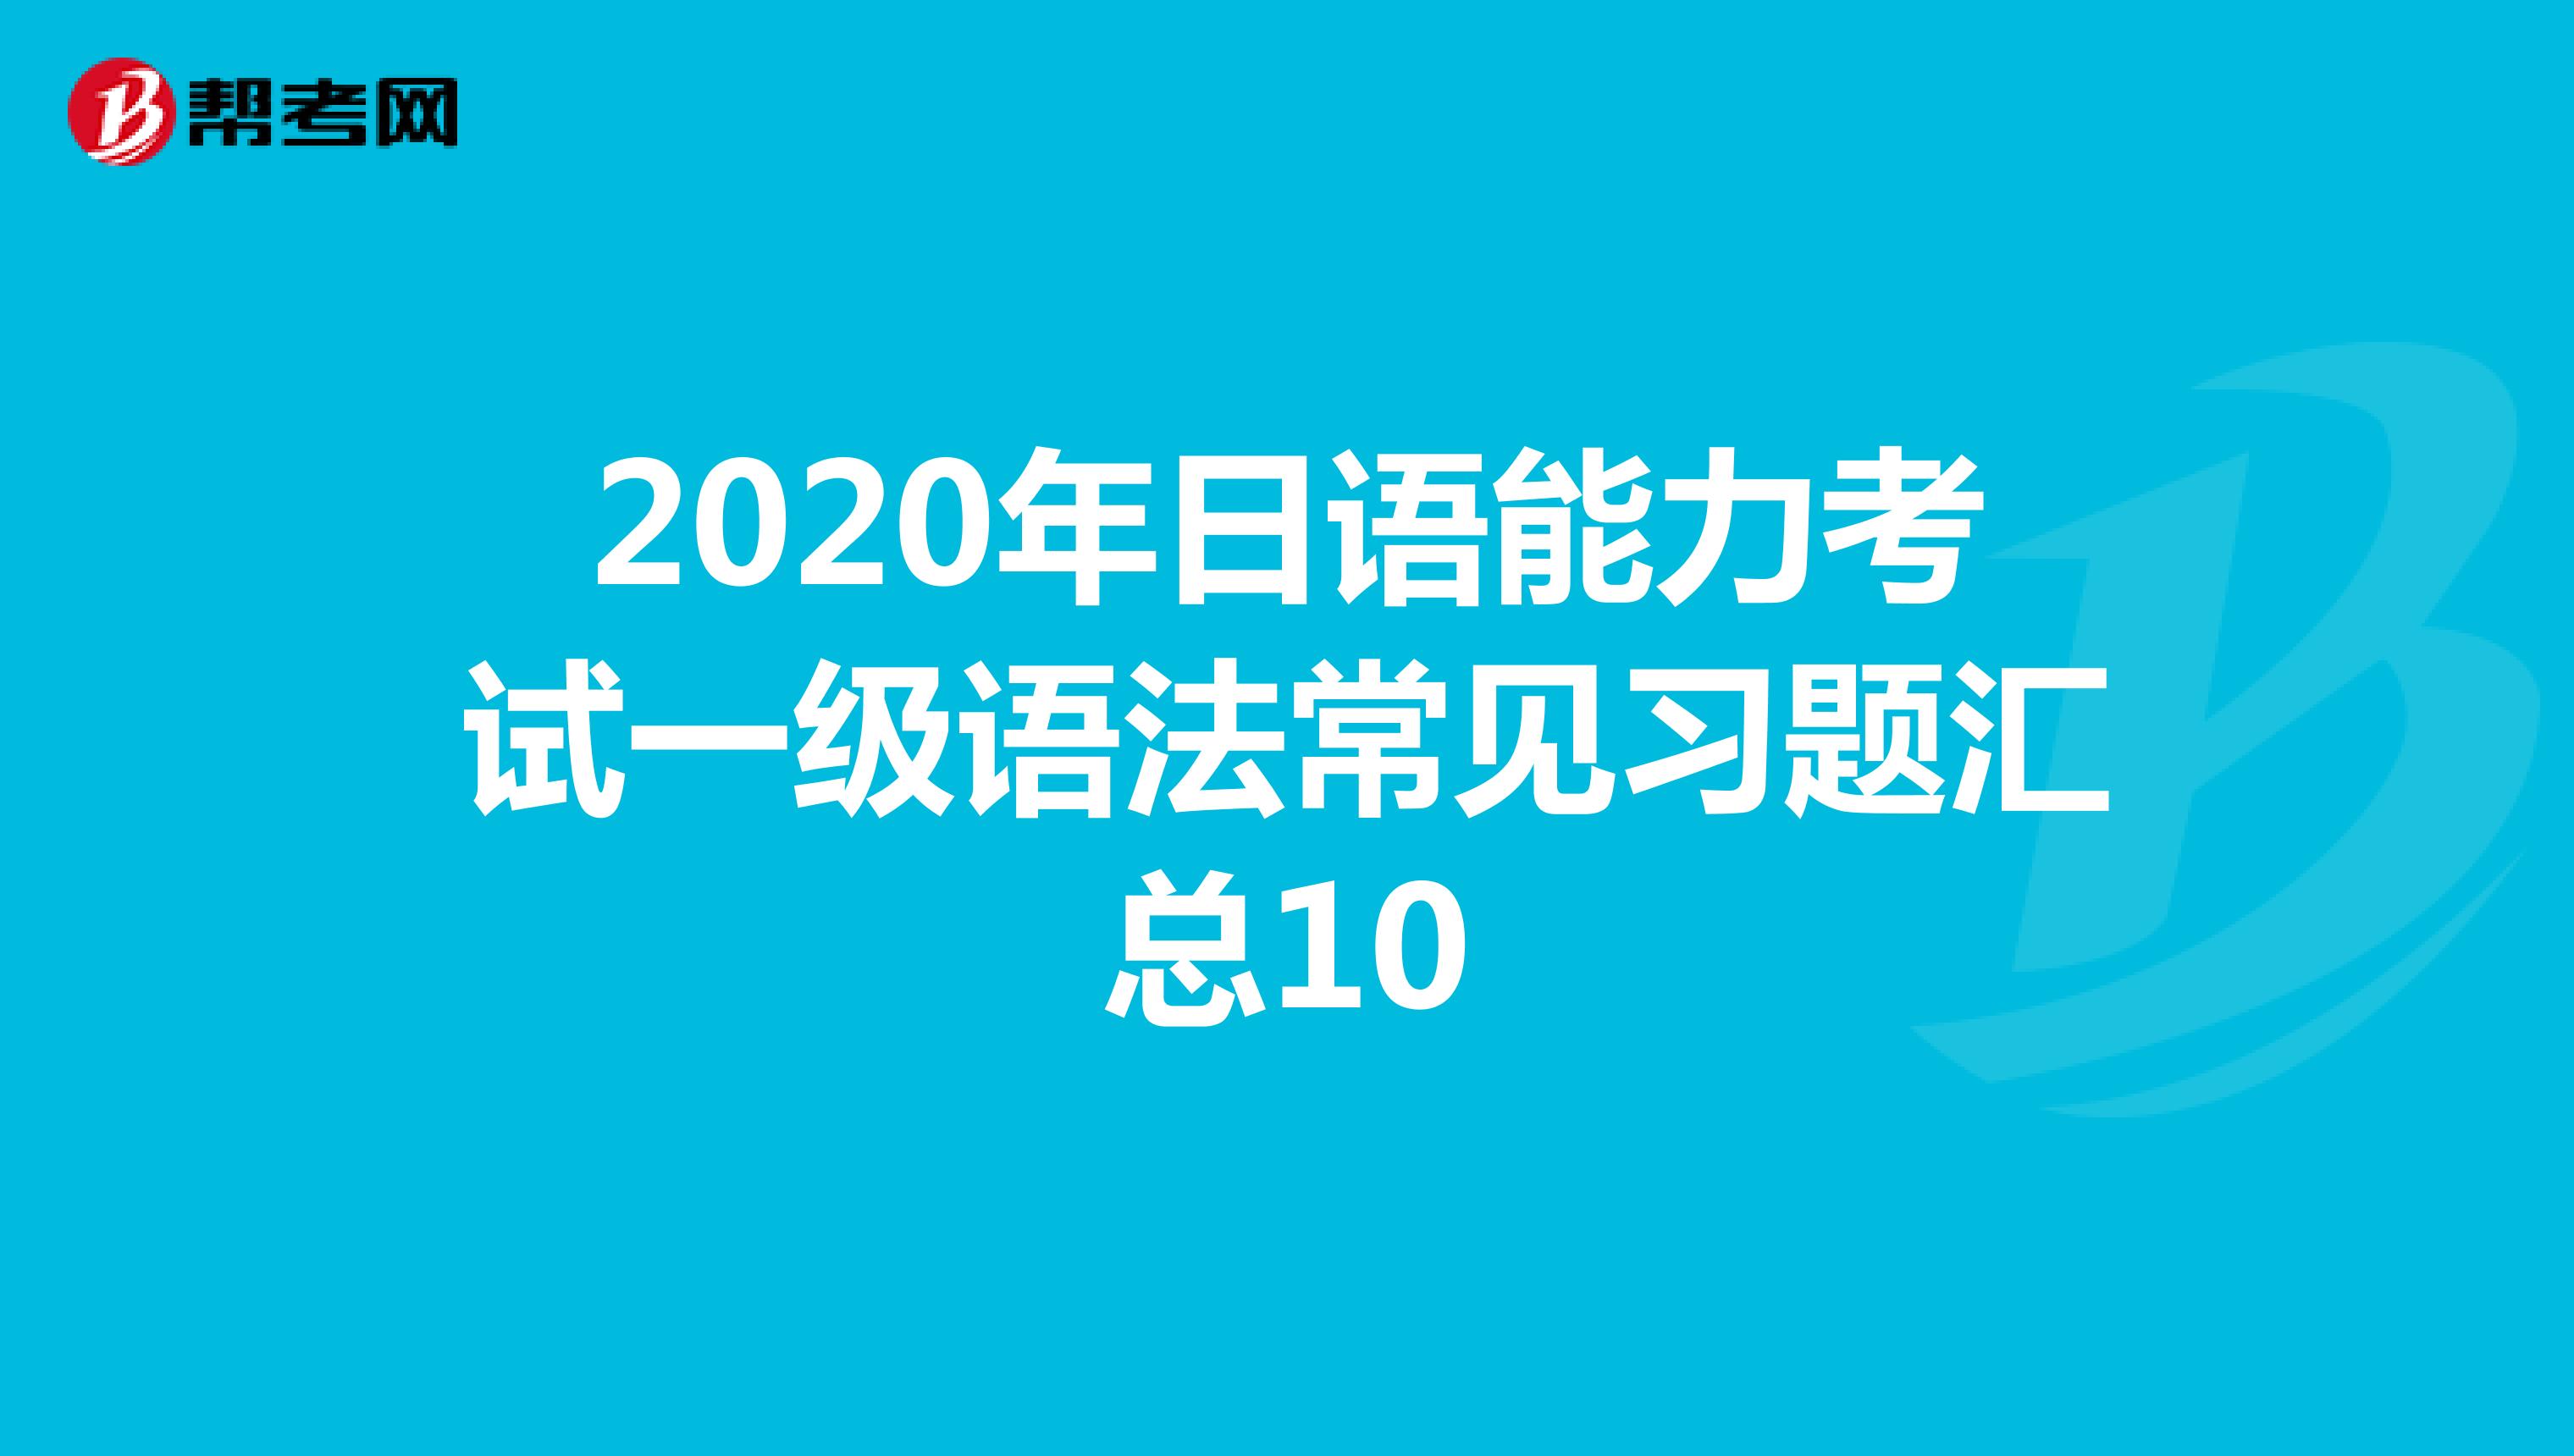 2020年日语能力考试一级语法常见习题汇总10